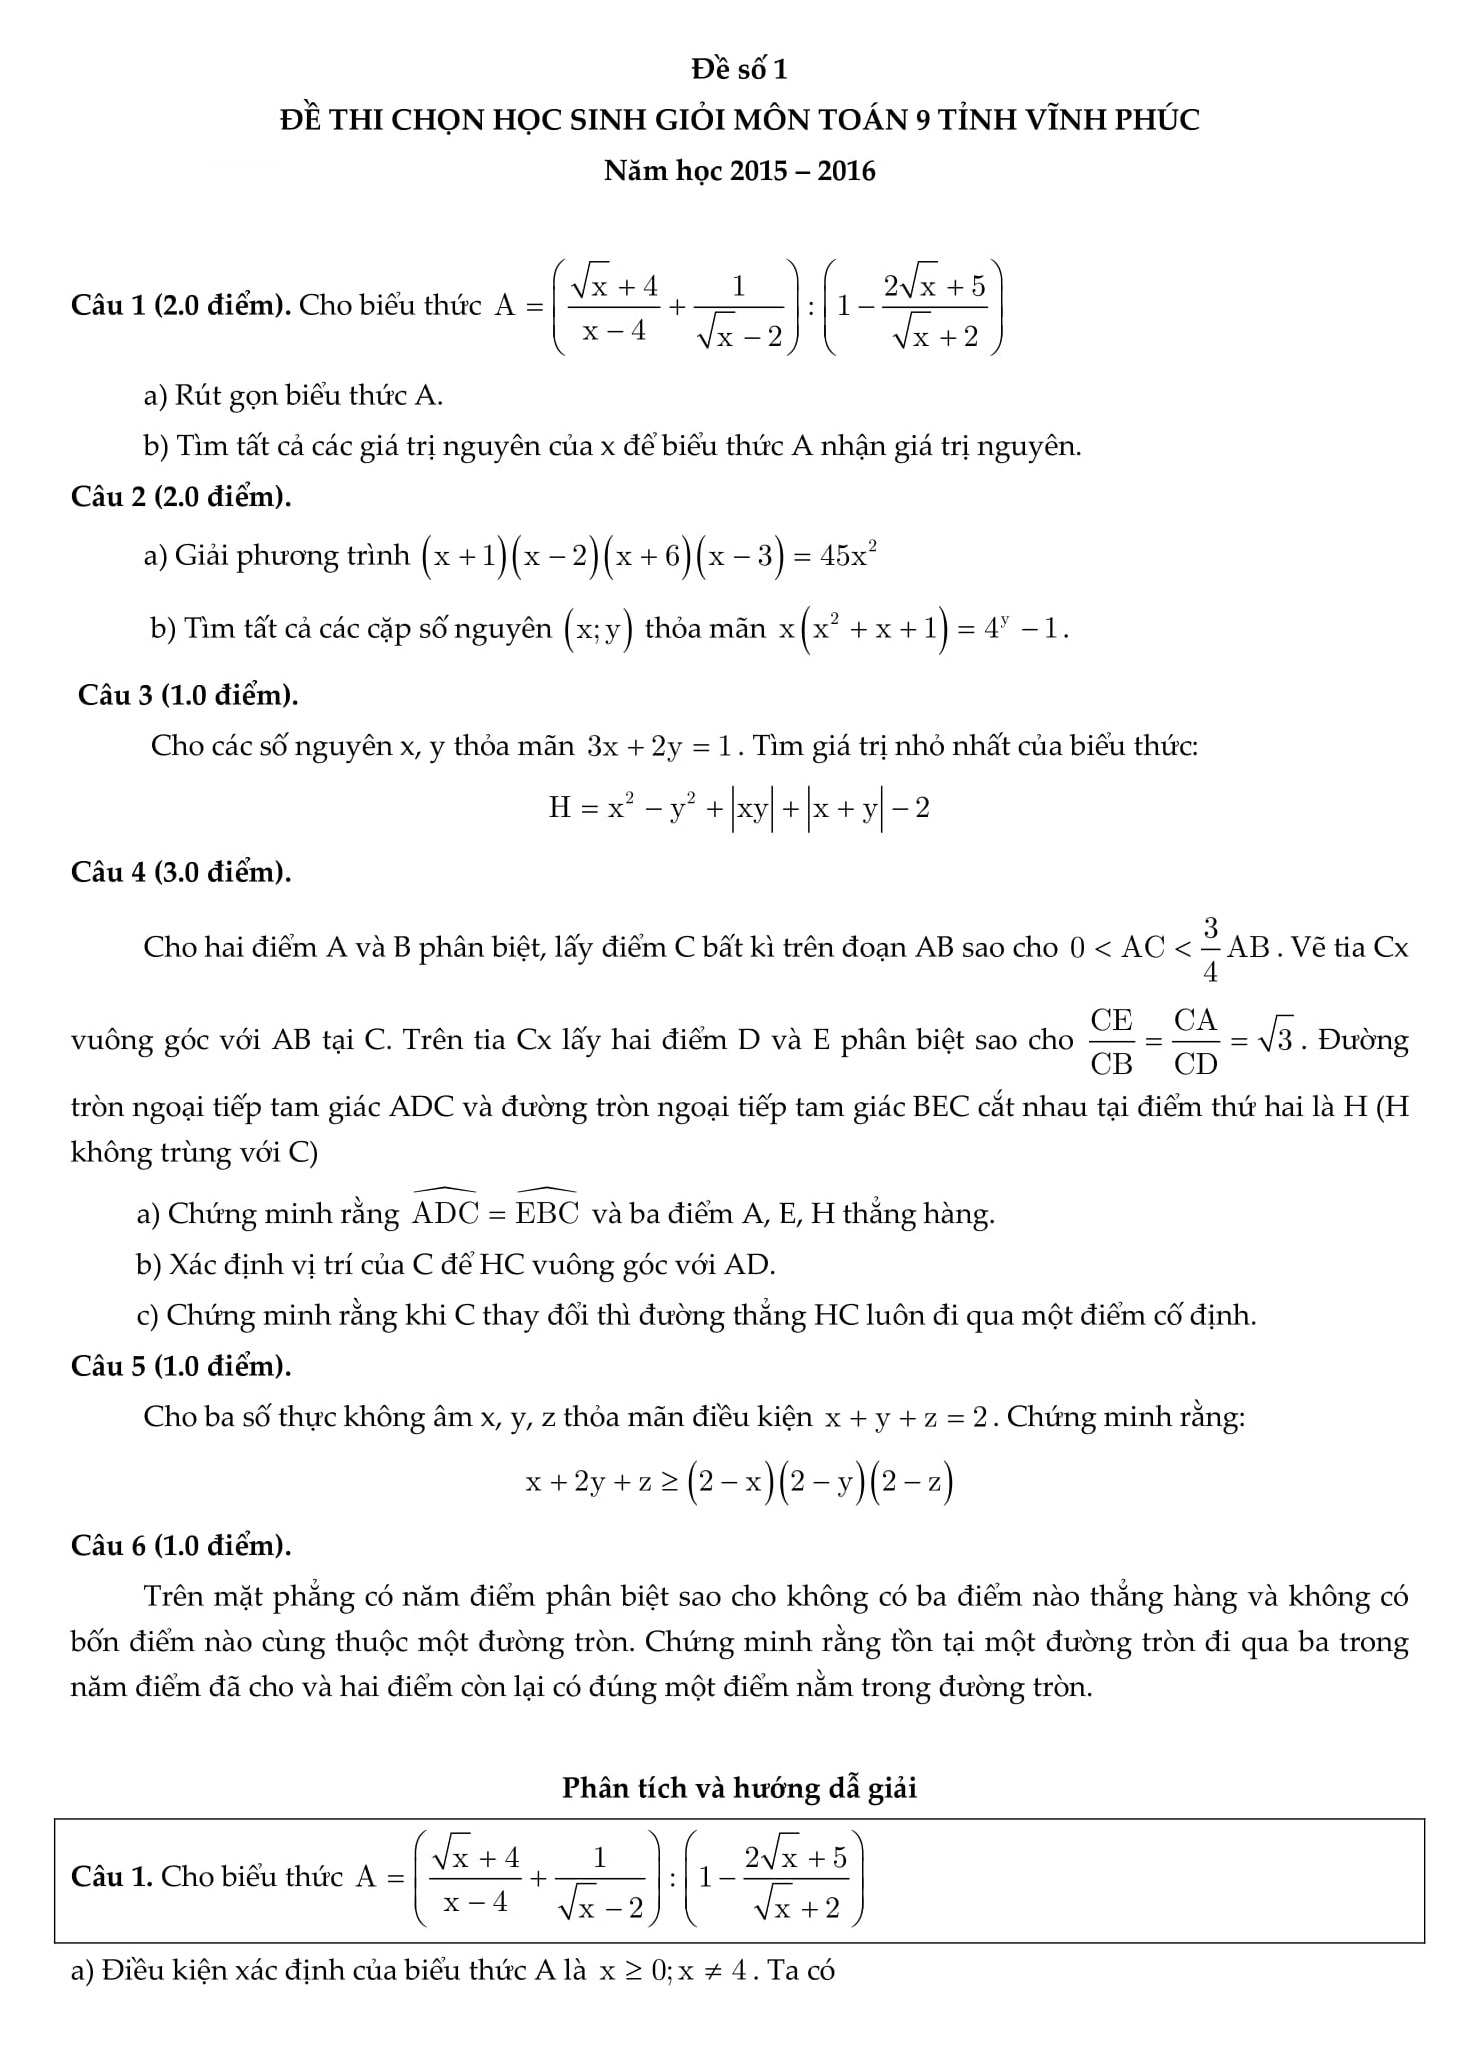 Phân tích và hướng dẫn giải đề thi HSG toán 9